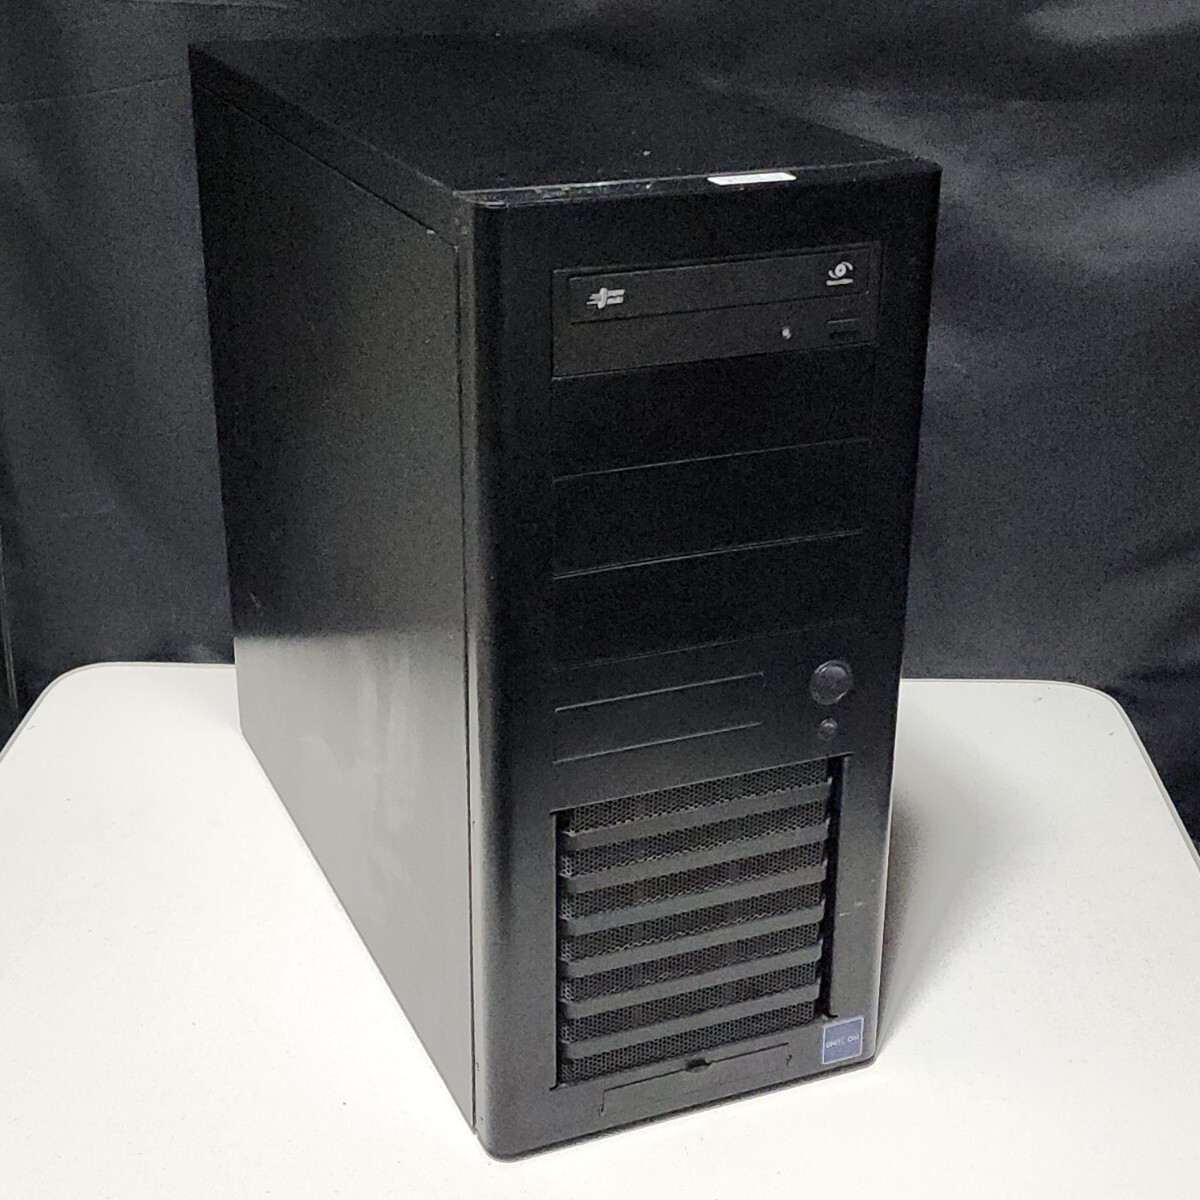 【送料無料】LIAN LI PC-A6010 ミドルタワー型PCケース(ATX) DVDドライブ ケースファン×3基搭載 フルアルミ製_画像1